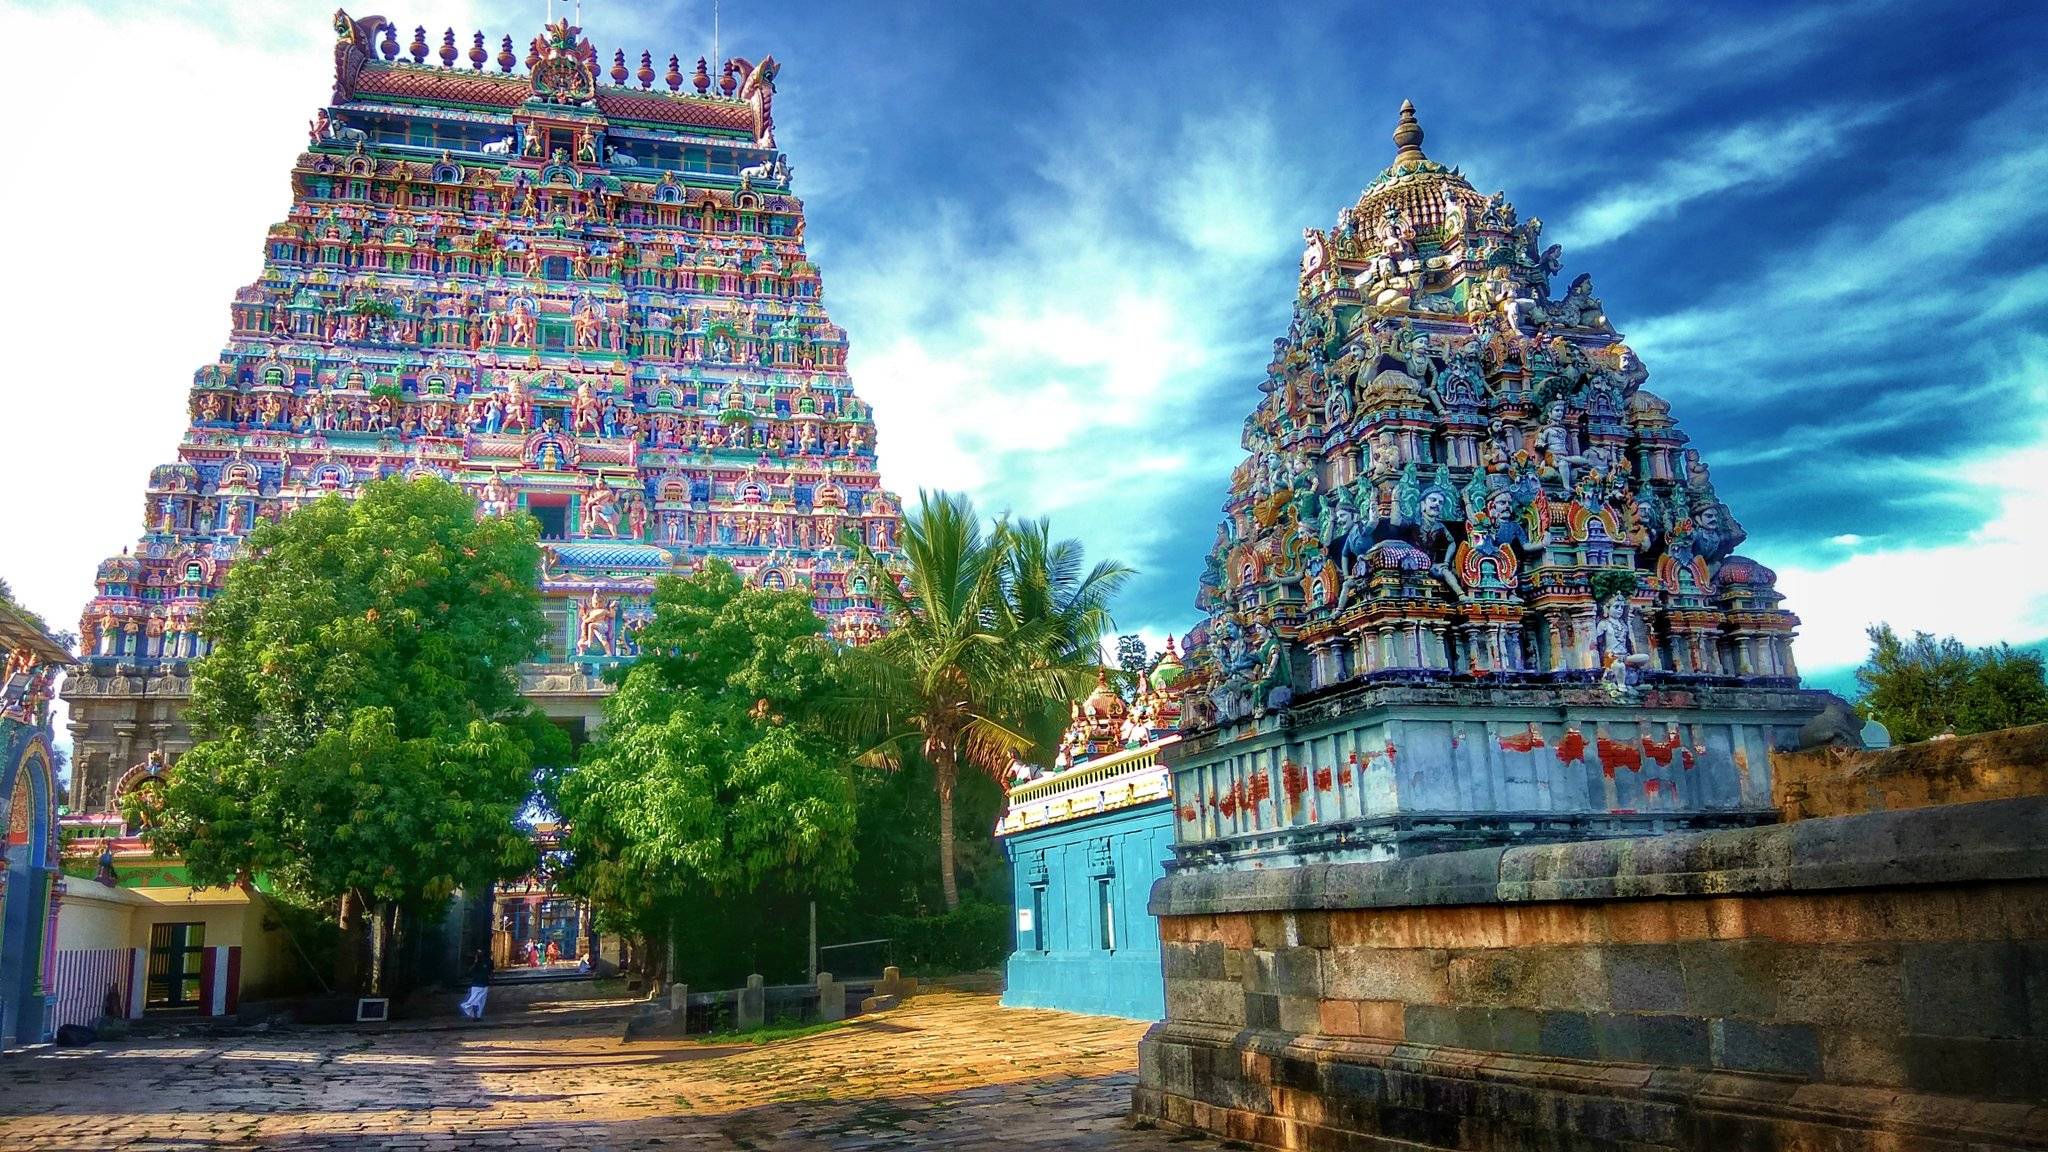 Блог yoair - публикация в мировом блоге по антропологии.
совершите поездку по великим индуистским храмам тамил наду, индия - yoair blog